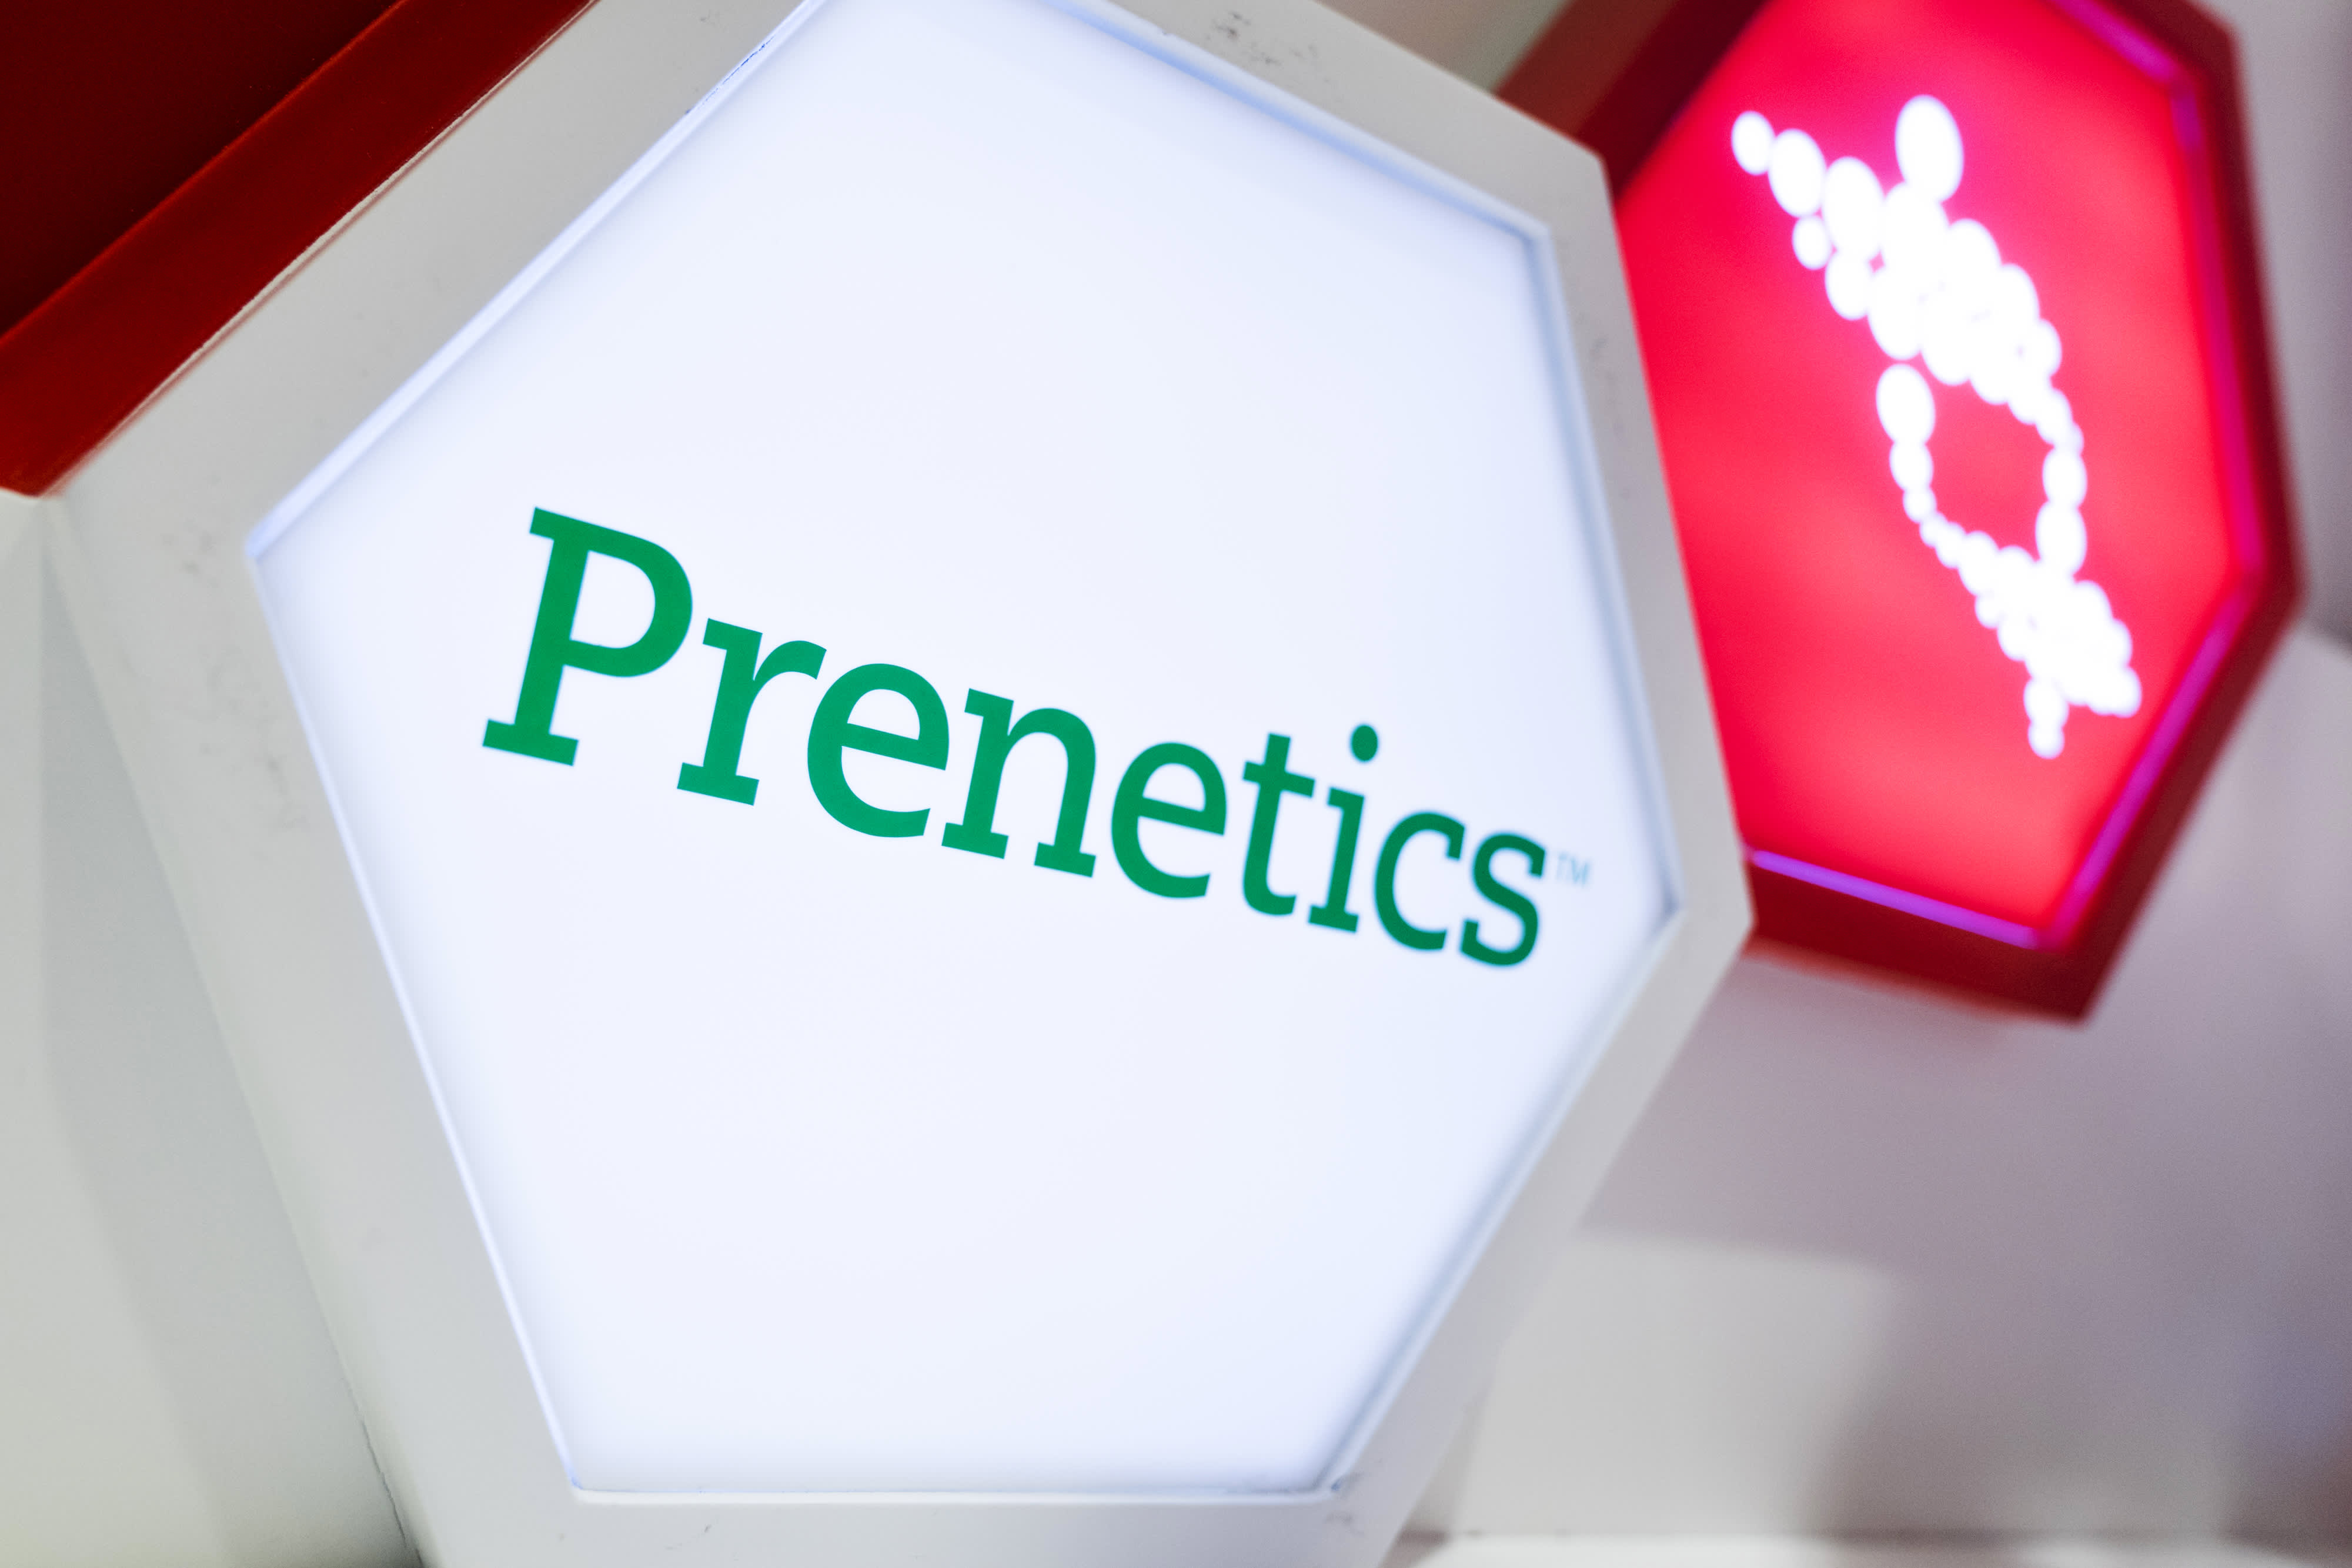 Hong Kong biotech start-up Prenetics plans $1.3 billion SPAC merger